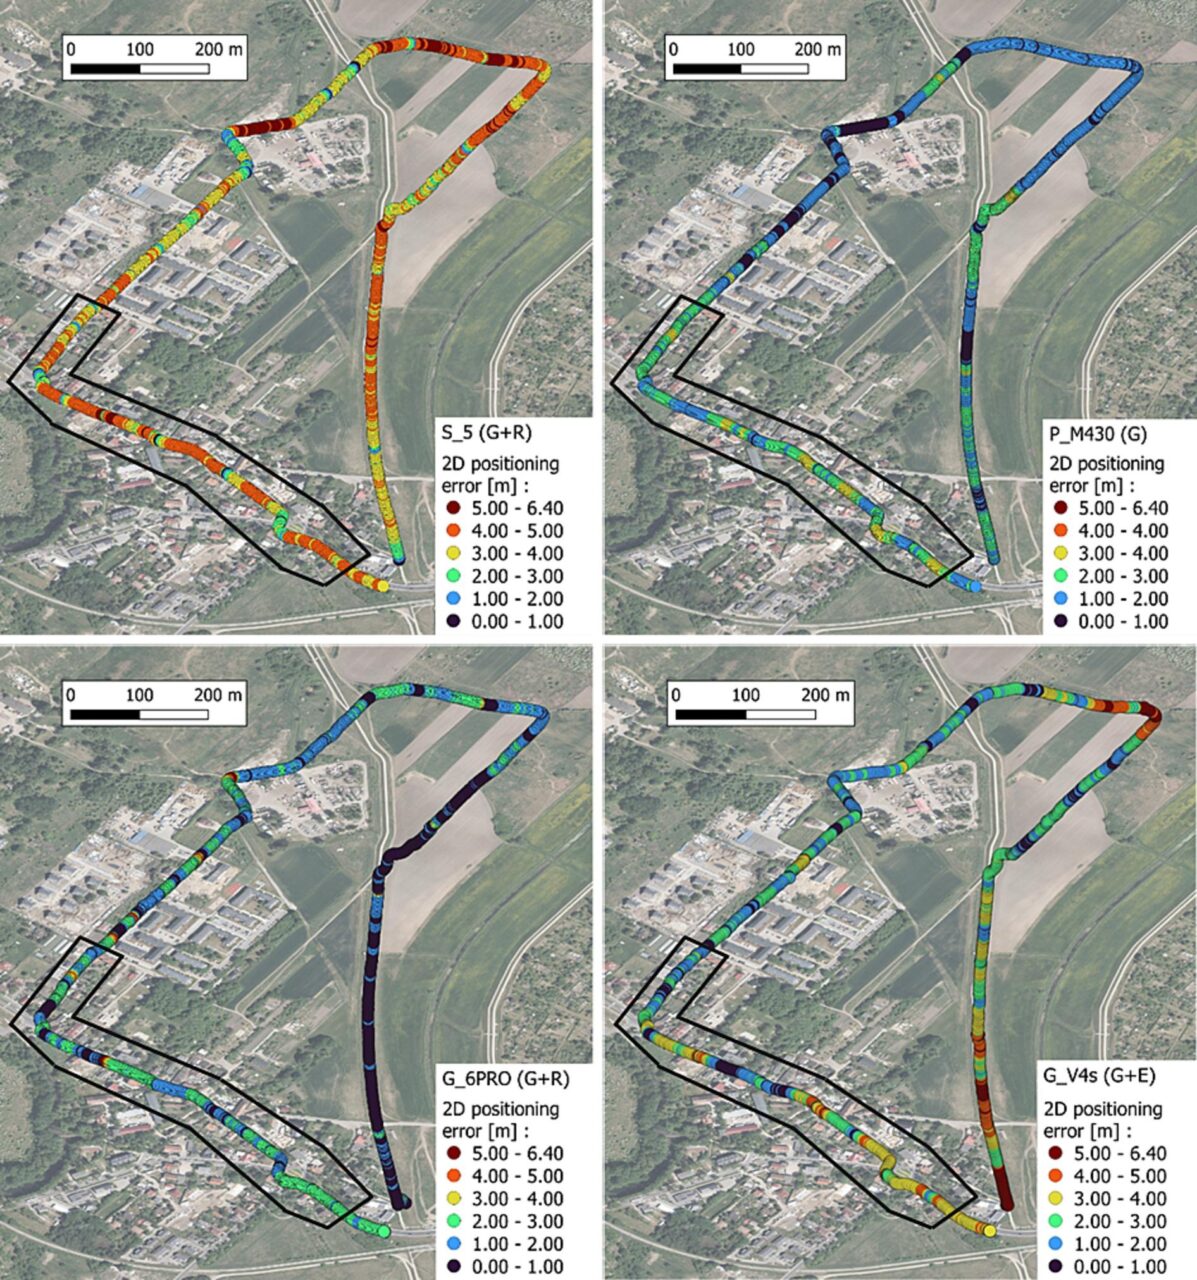 Cztery obrazy satelitarne reprezentujące błąd pozycjonowania 2D różnych systemów nawigacji na identycznym obszarze, z kolorowymi oznaczeniami wskazującymi zakres błędu od 0,00 do 6,40 metrów.